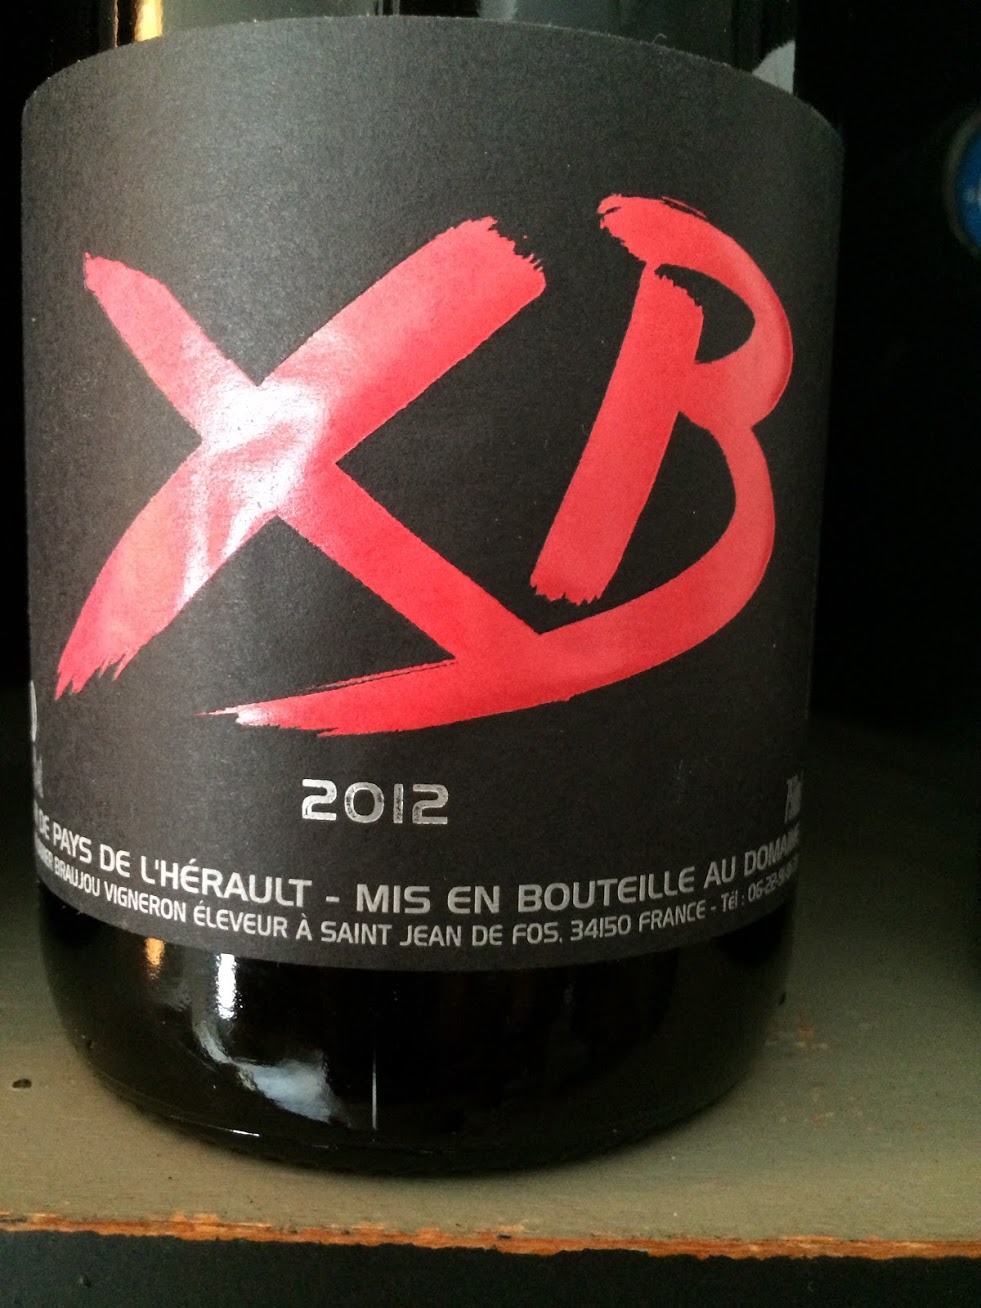 XB - Rouge - 2012